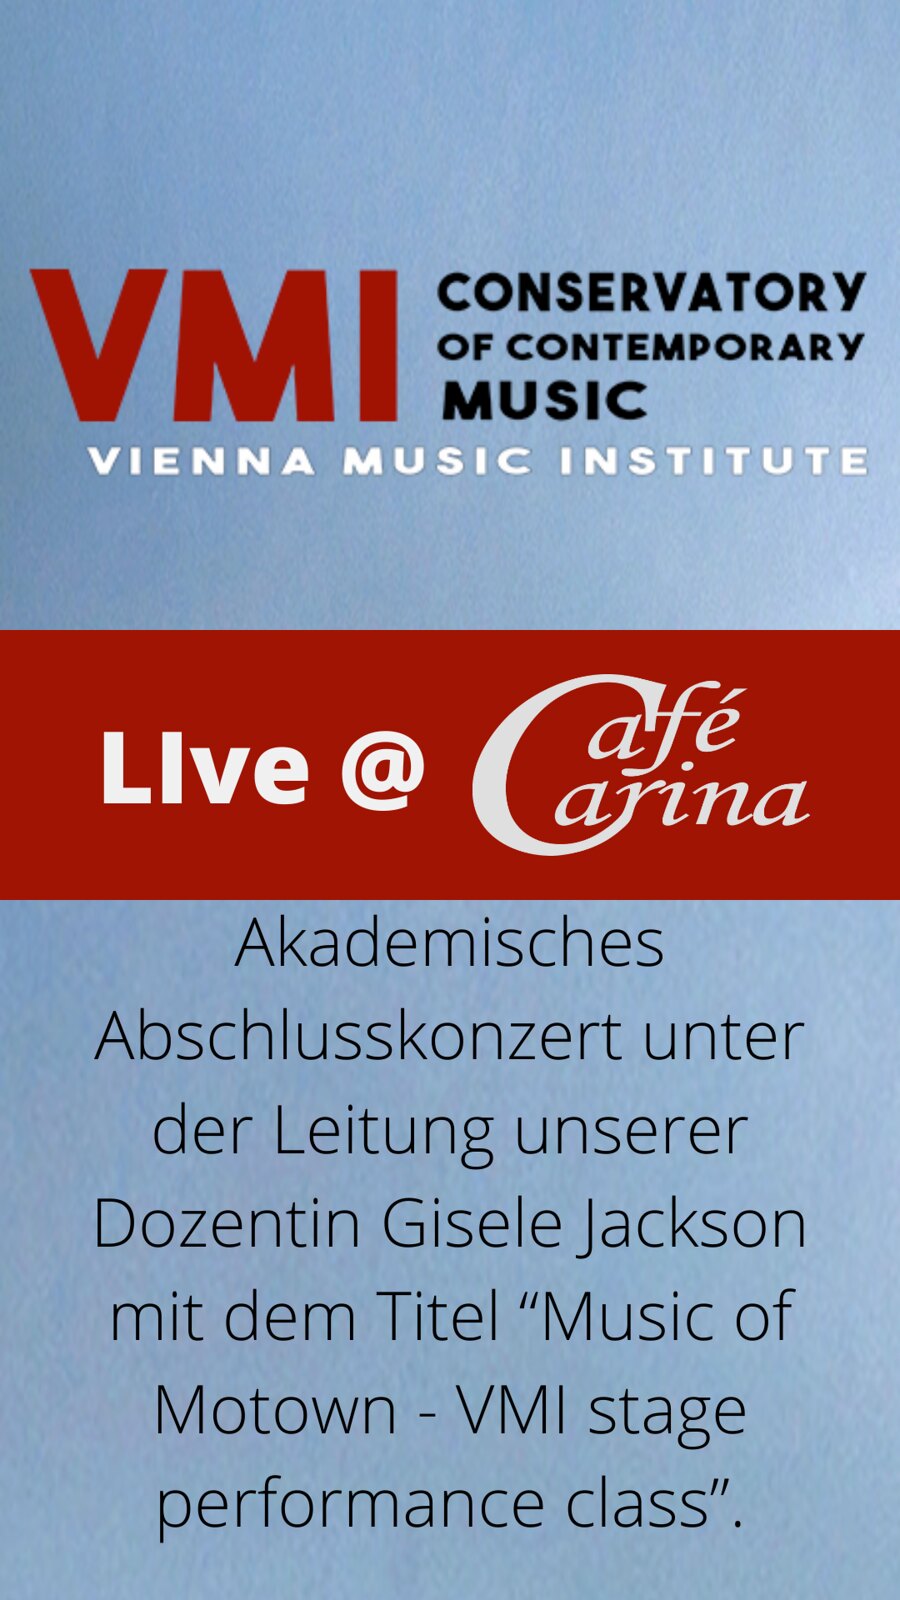 VMI – VIENNA MUSIC INSTITUTE